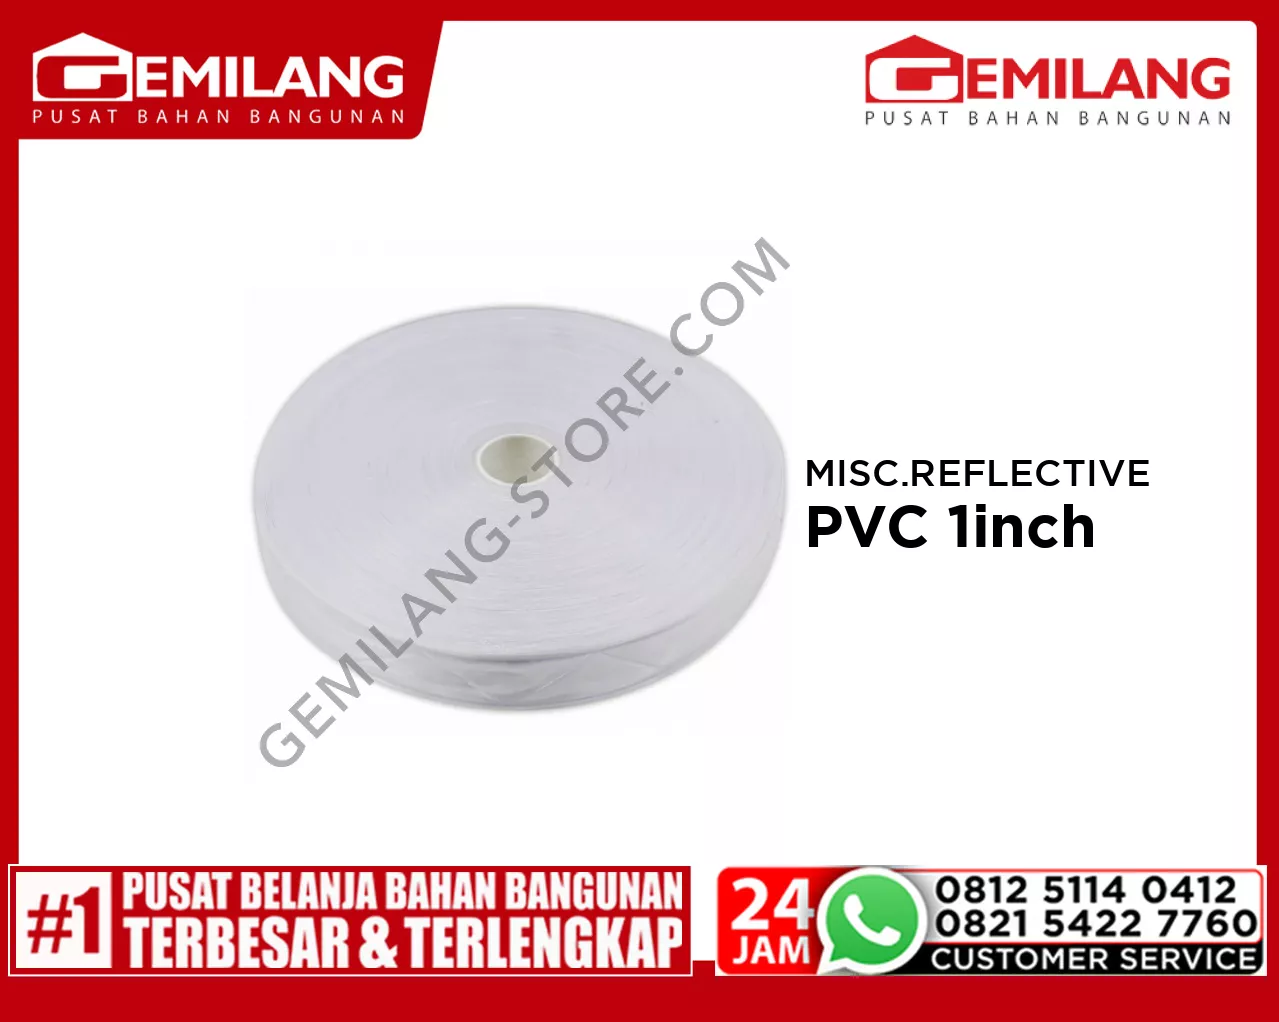 MISCELLENEOUS REFLECTIVE PVC 1inch